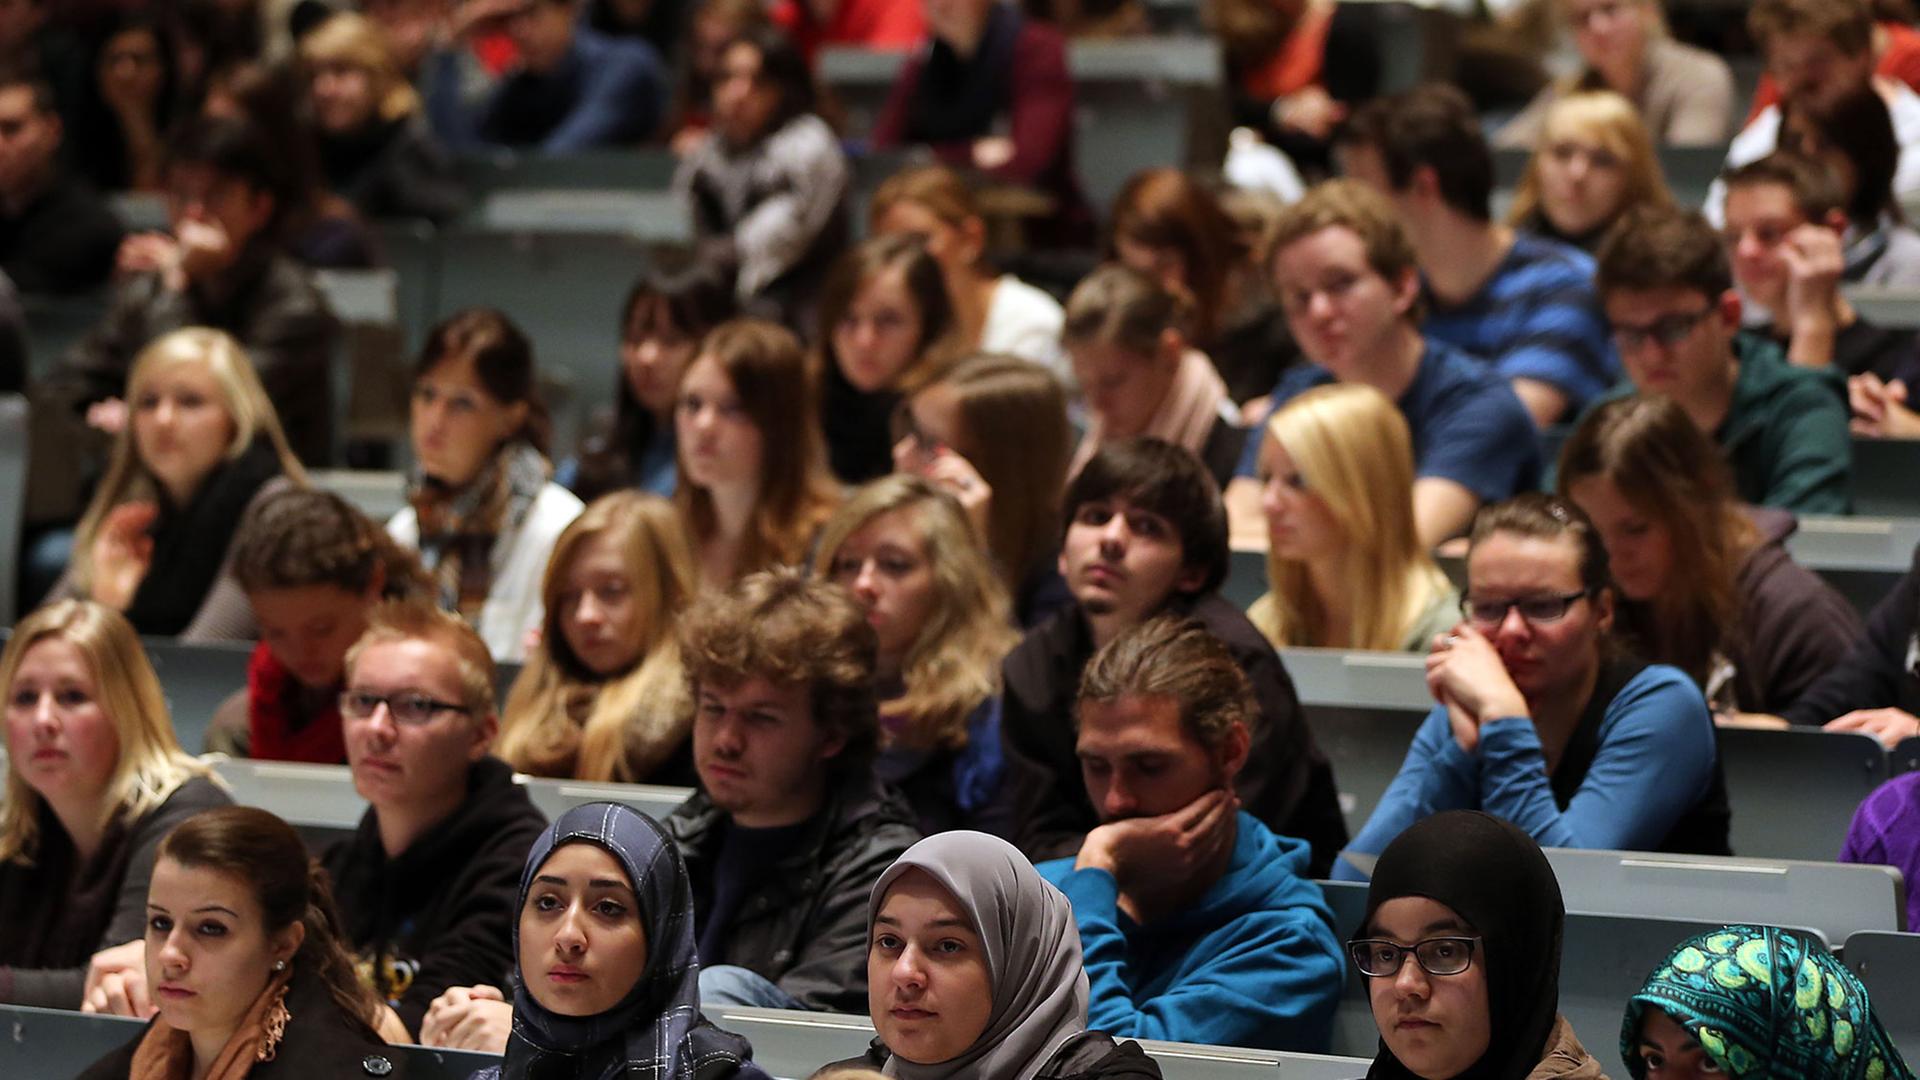 Studenten verfolgen in Köln in der Aula Universität eine Veranstaltung.